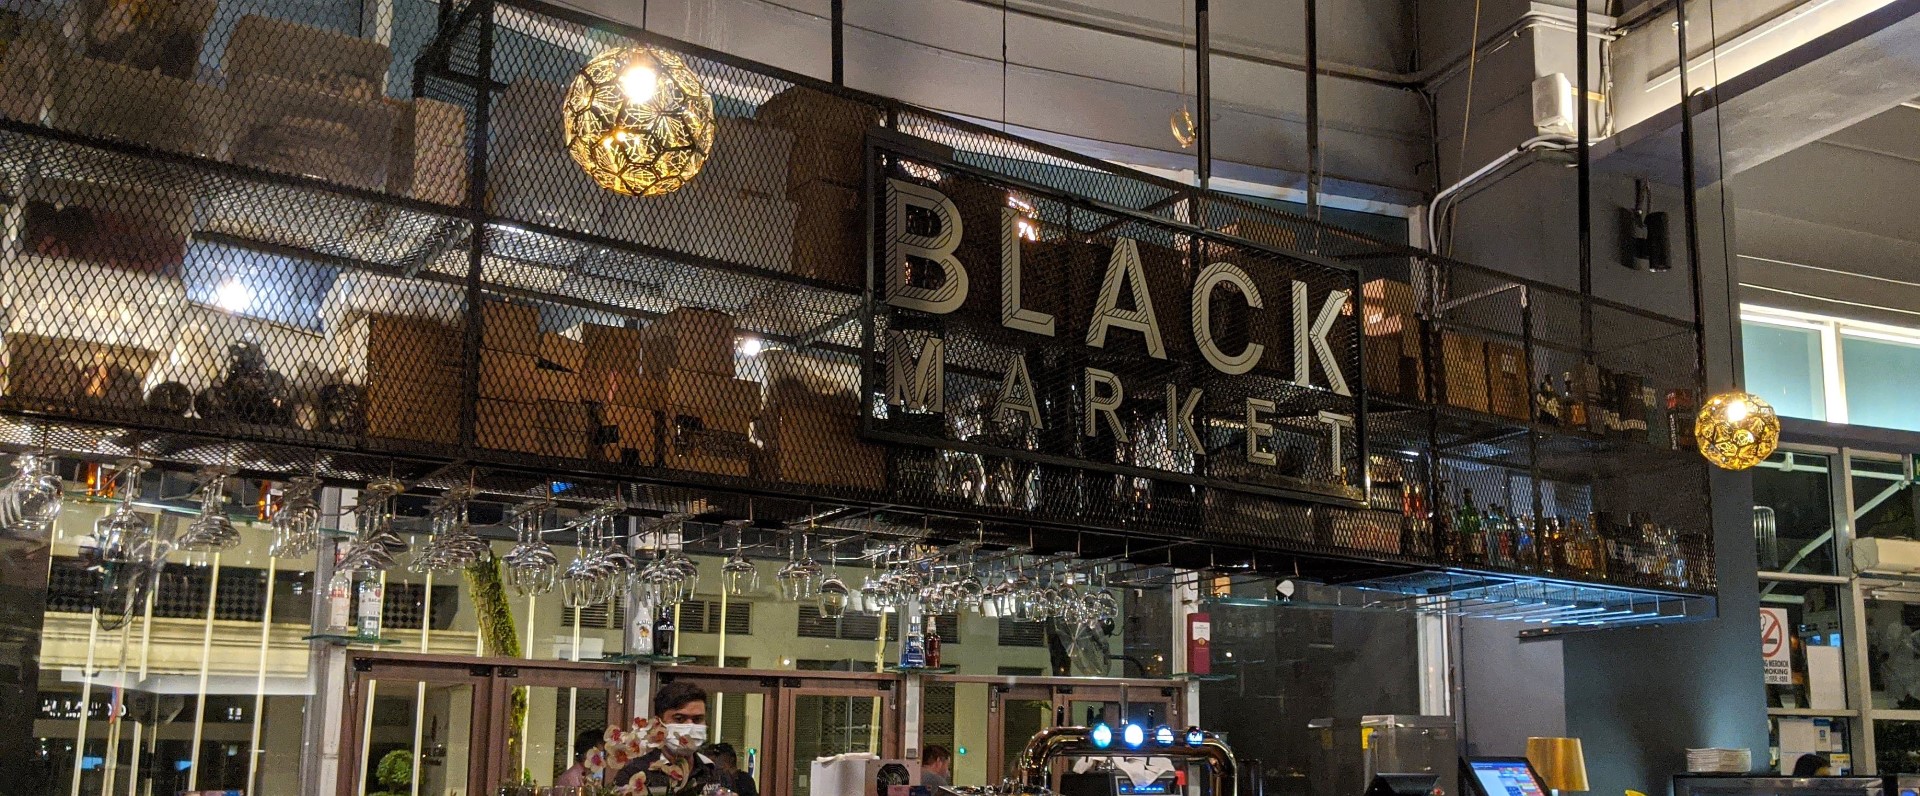 Black Market: Changkat's Great New Hangout